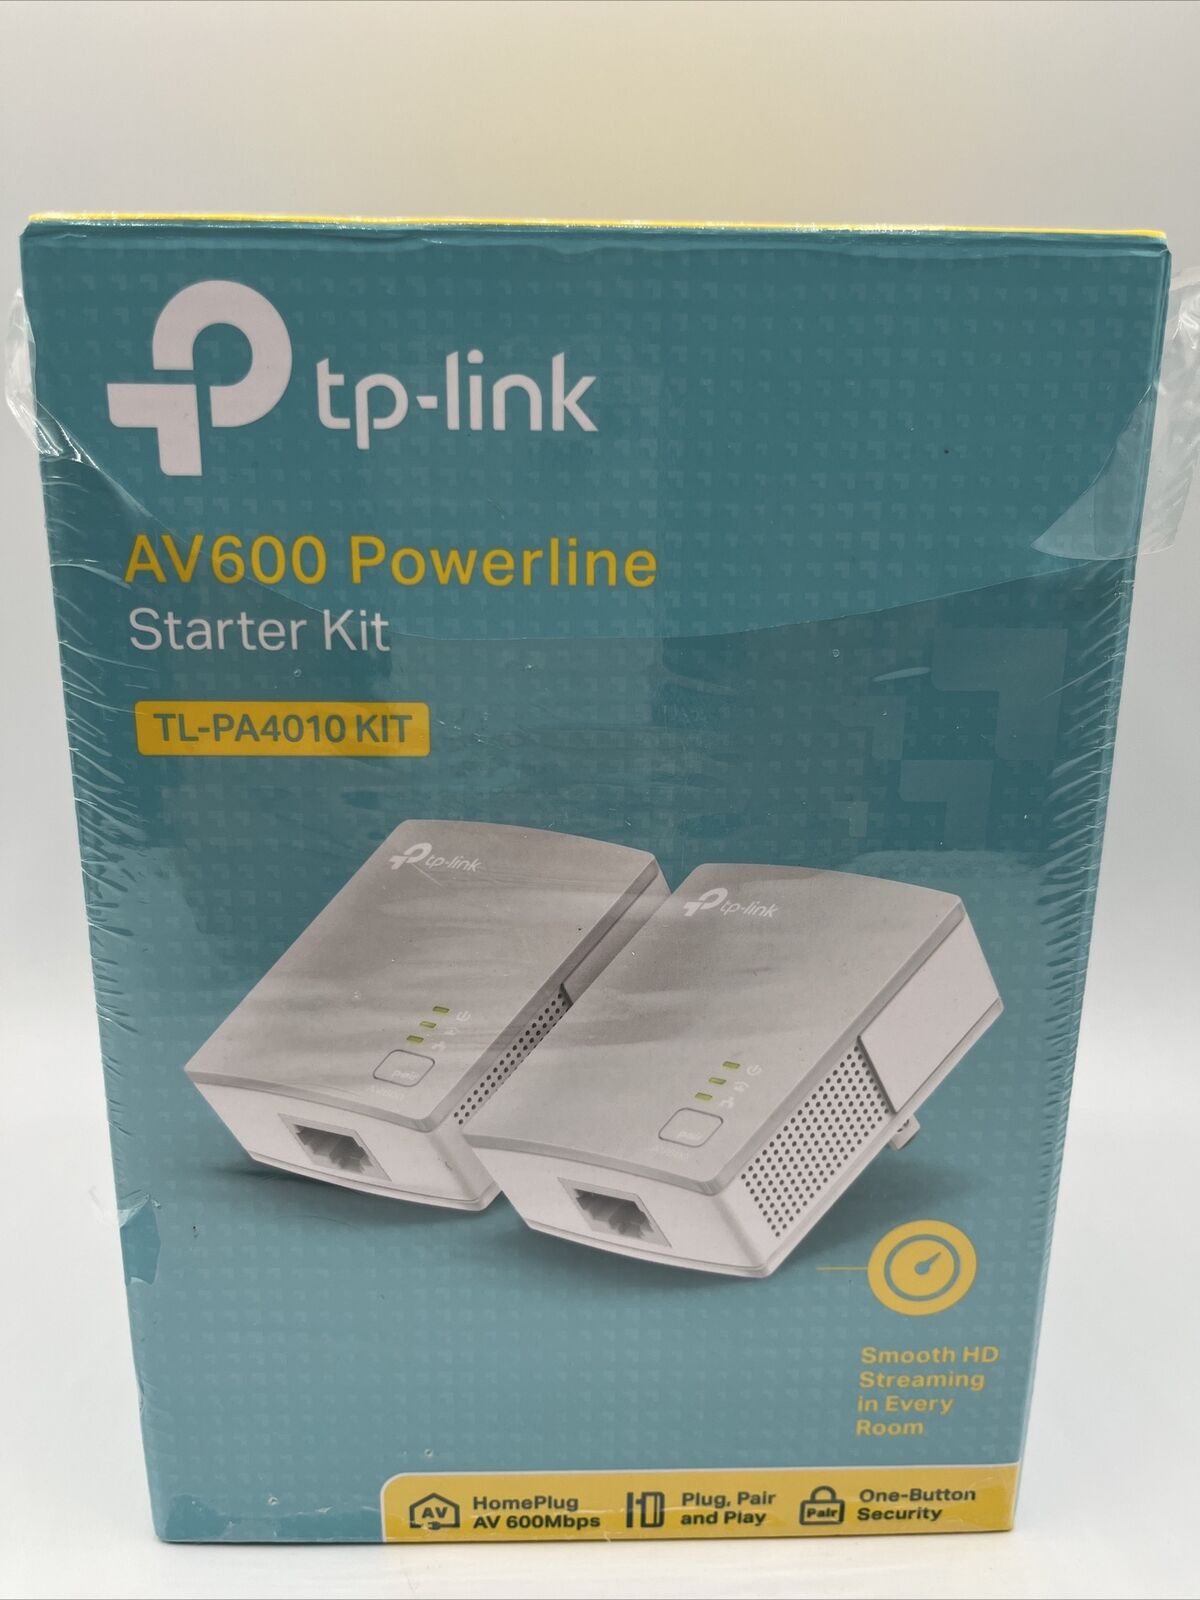 TP-Link AV600 Powerline Starter Kit TL-PA4010 KIT - Box Has Been Opened